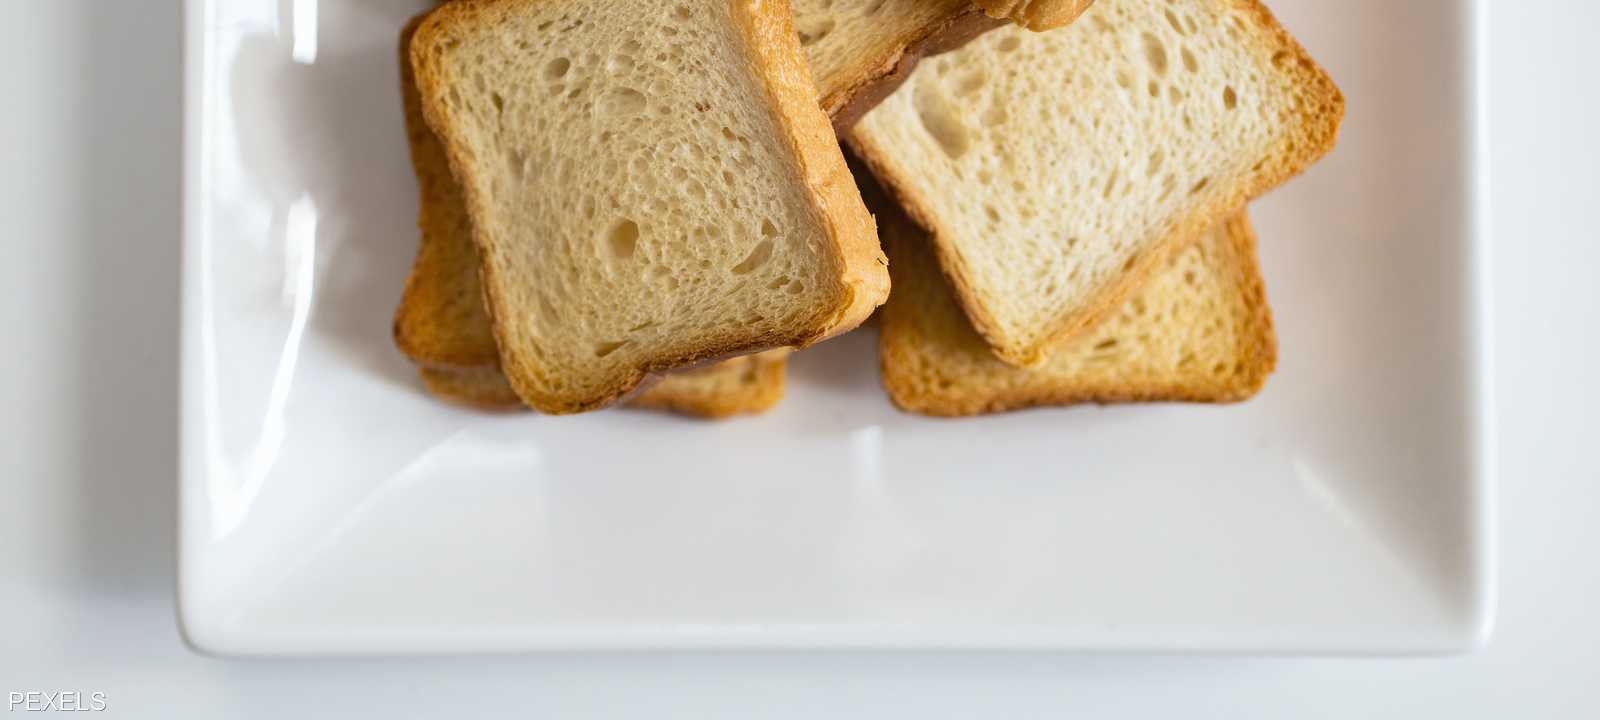 الخبز الأبيض من الأطعمة التي يدعو خبراء تغذية للتوقف عنها